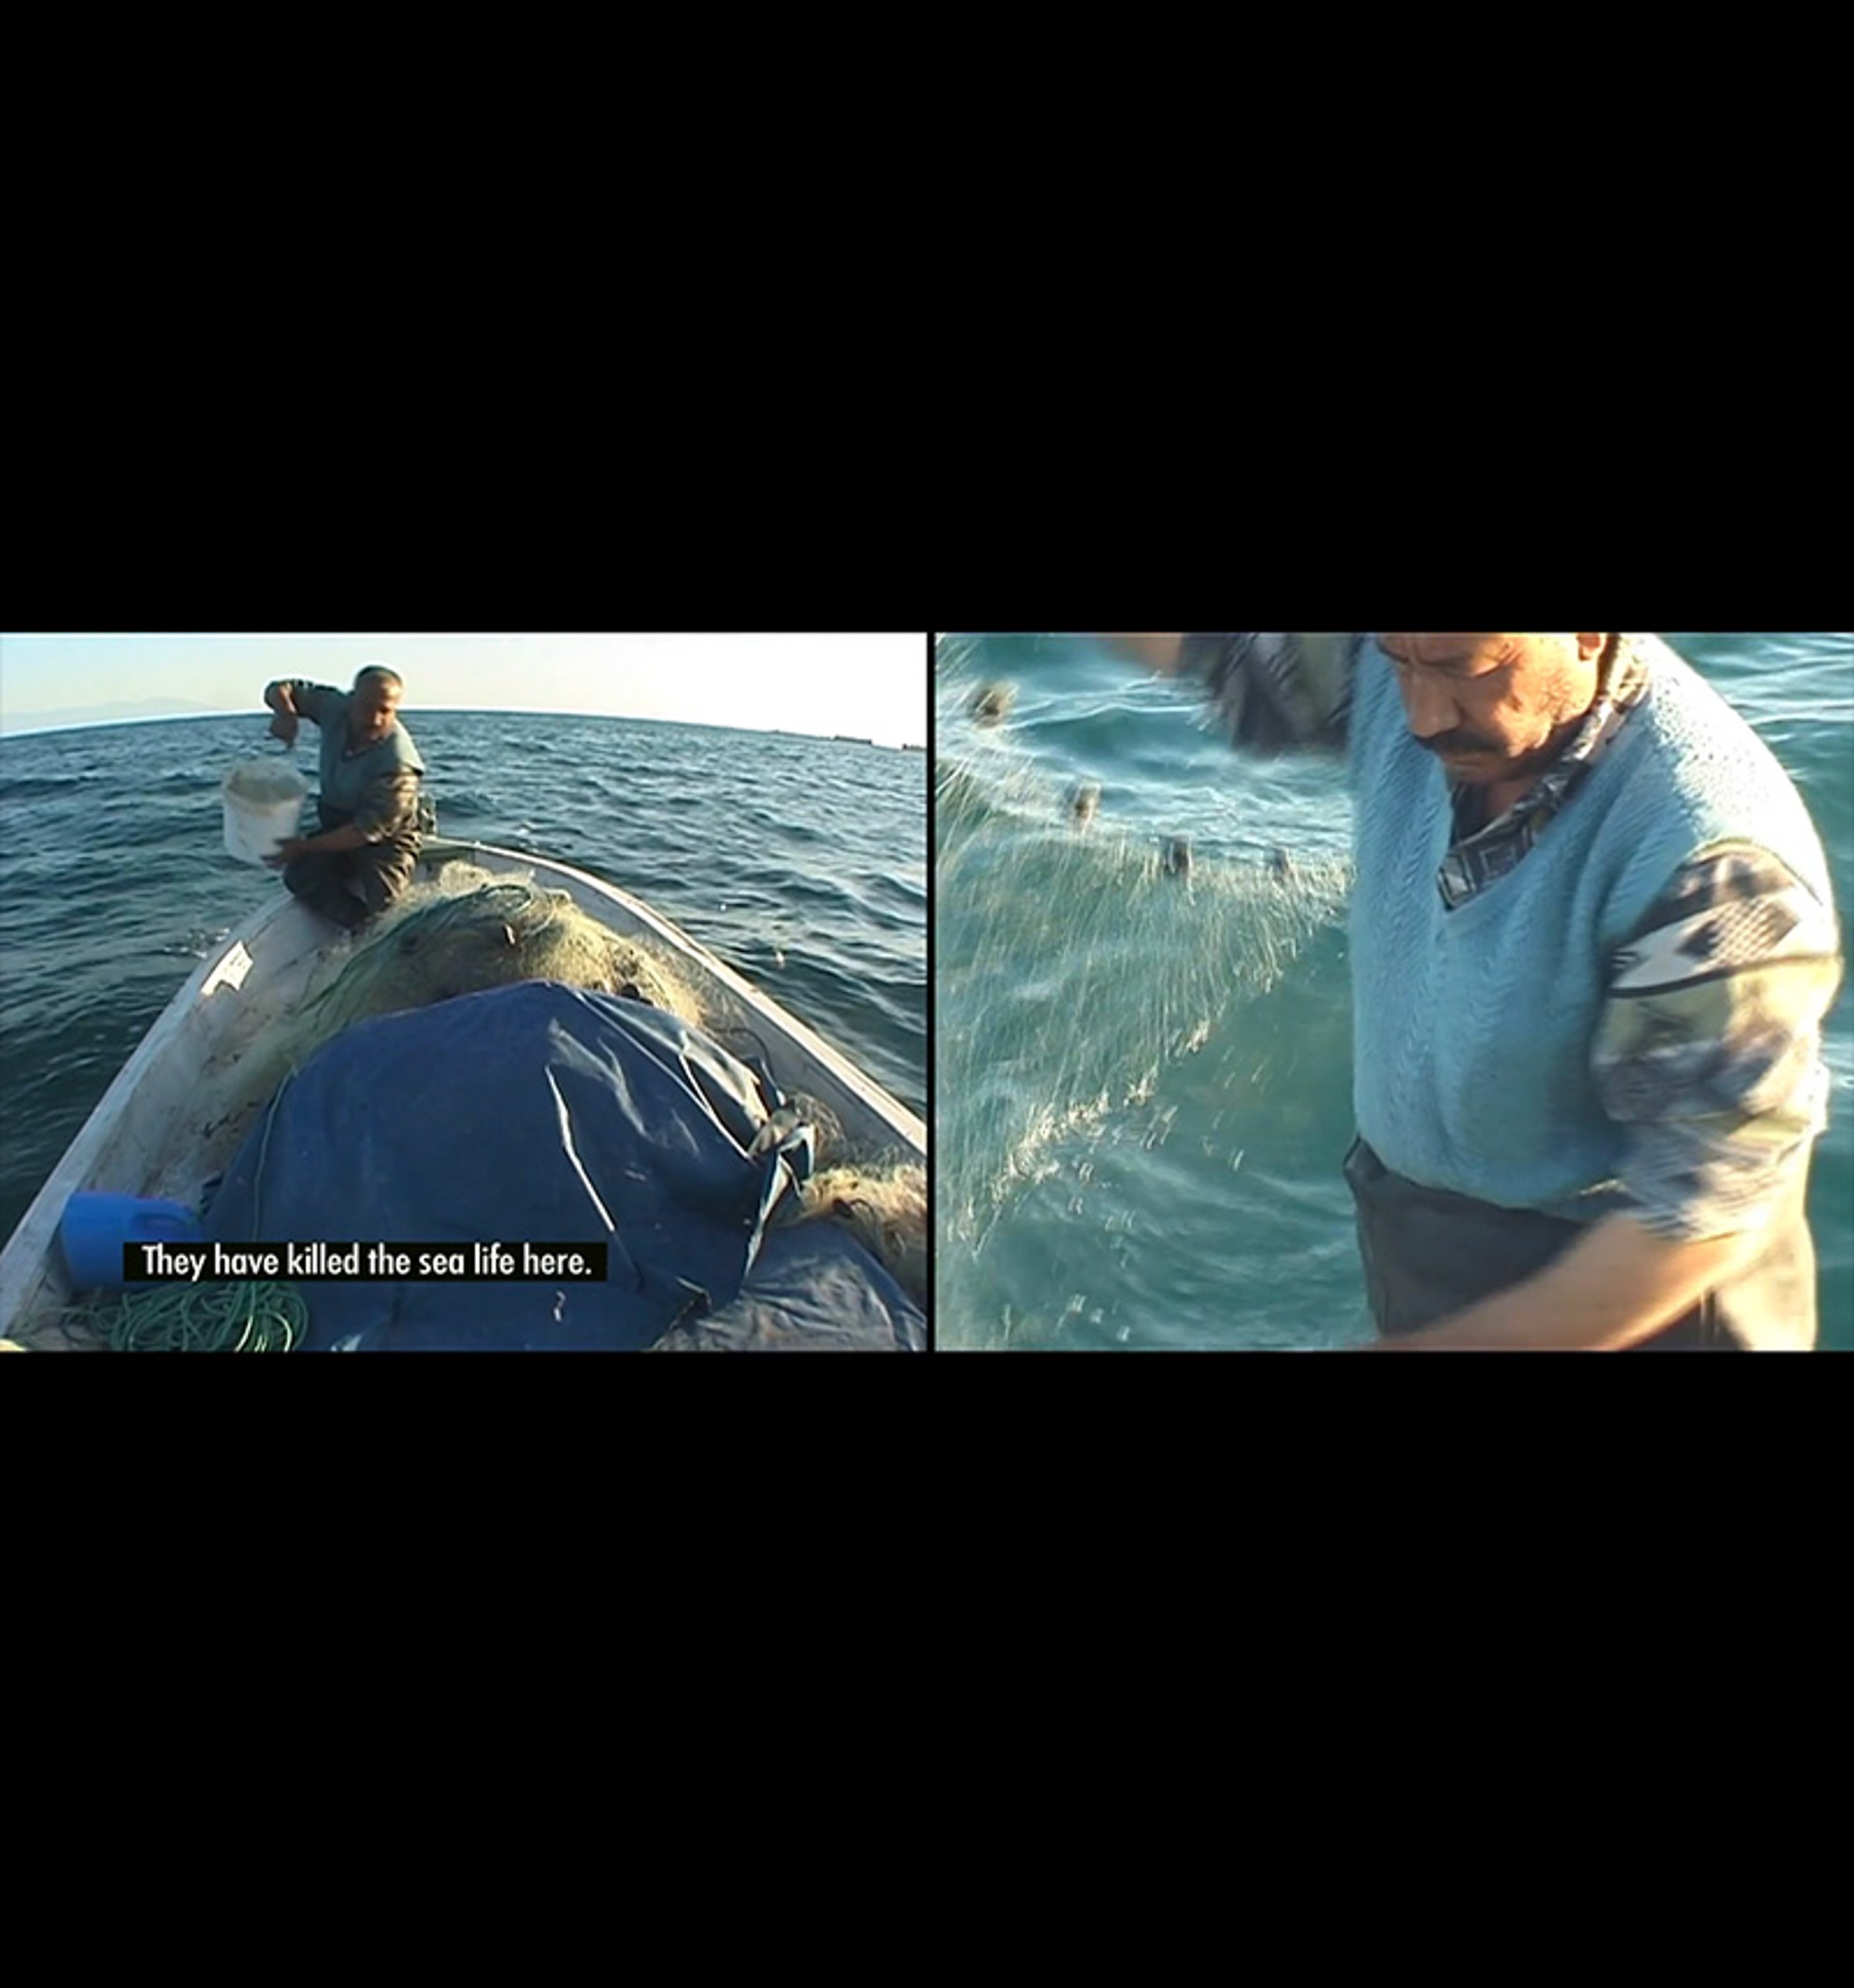 Fotograma de video de dos canales. A la izquierda hay un pescador en un bote, sacando un balde del mar. Él está diciendo: "Han matado la vida marina aquí". En el canal derecho está el pescador sacando telarañas del agua.